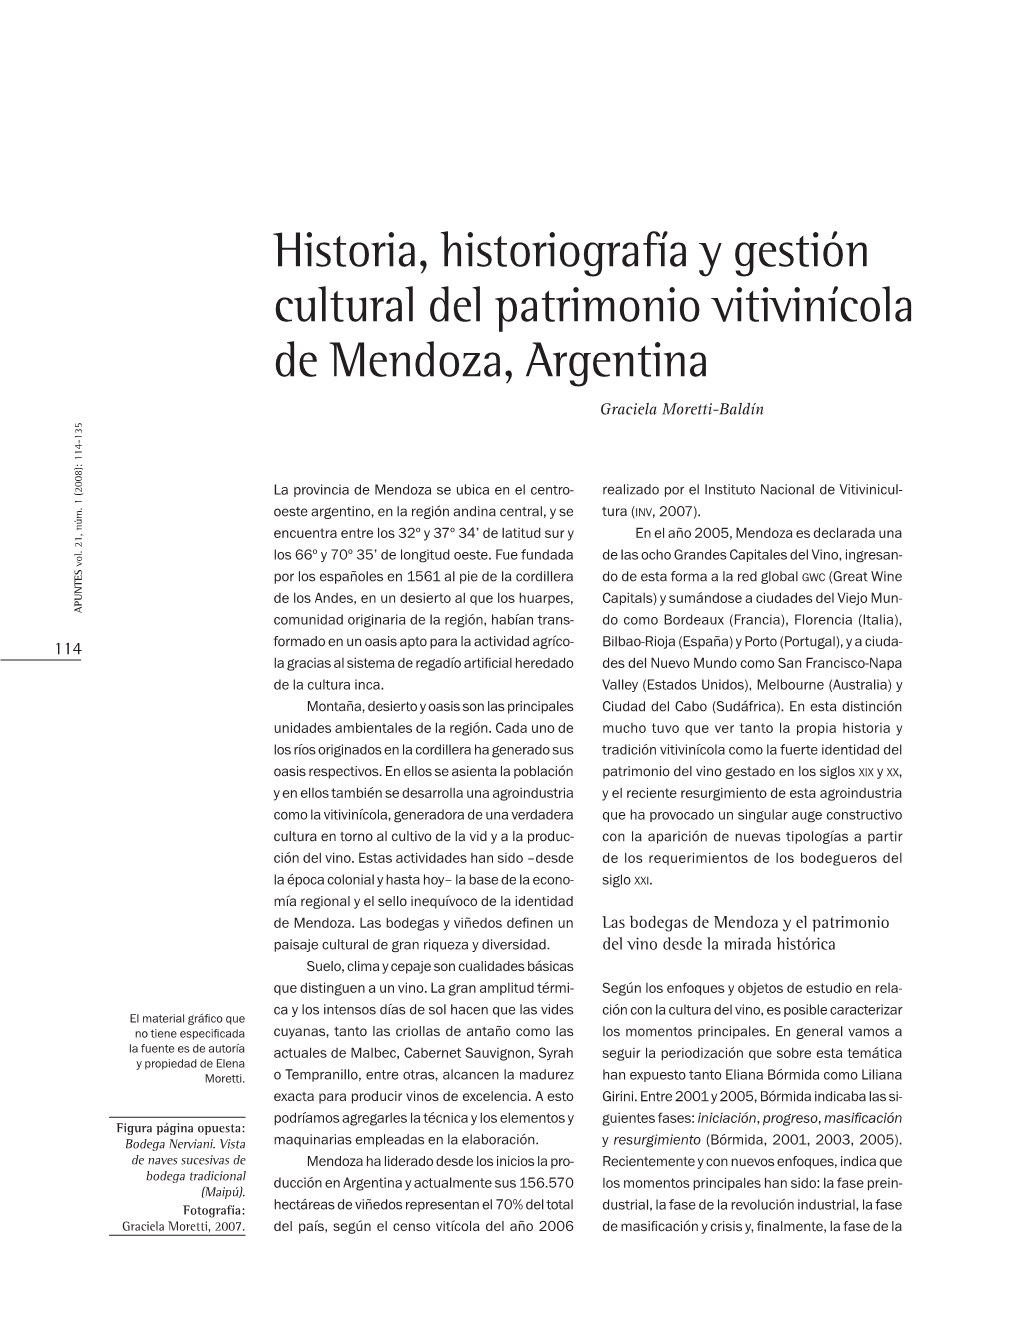 Historia, Historiografía Y Gestión Cultural Del Patrimonio Vitivinícola De Mendoza, Argentina Graciela Moretti-Baldín